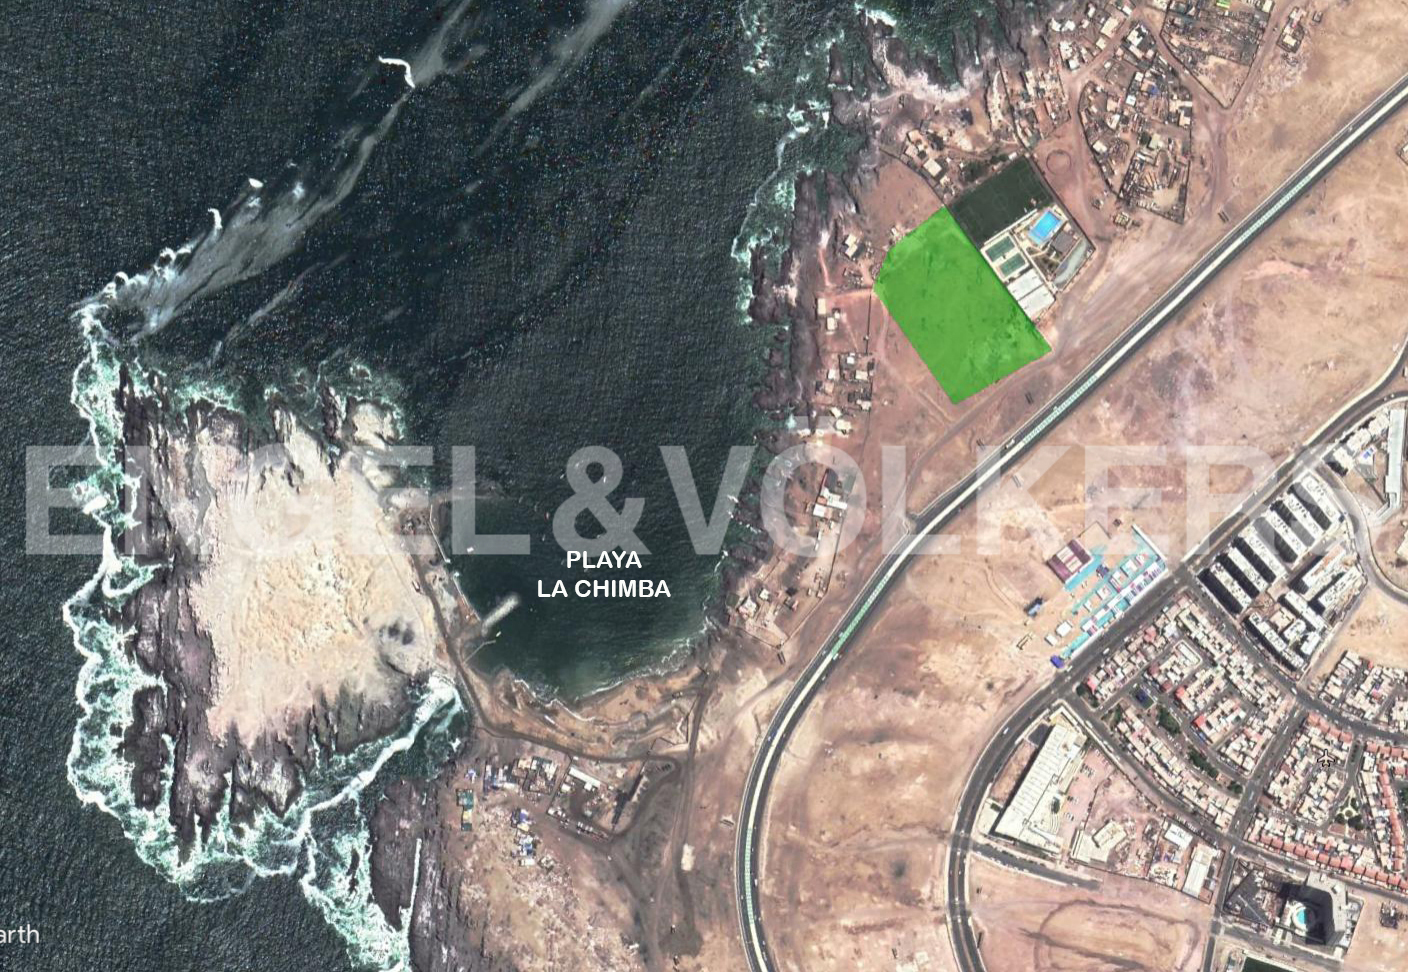 Inversión / Residencial inversión en Antofagasta Norte - 04.jpg